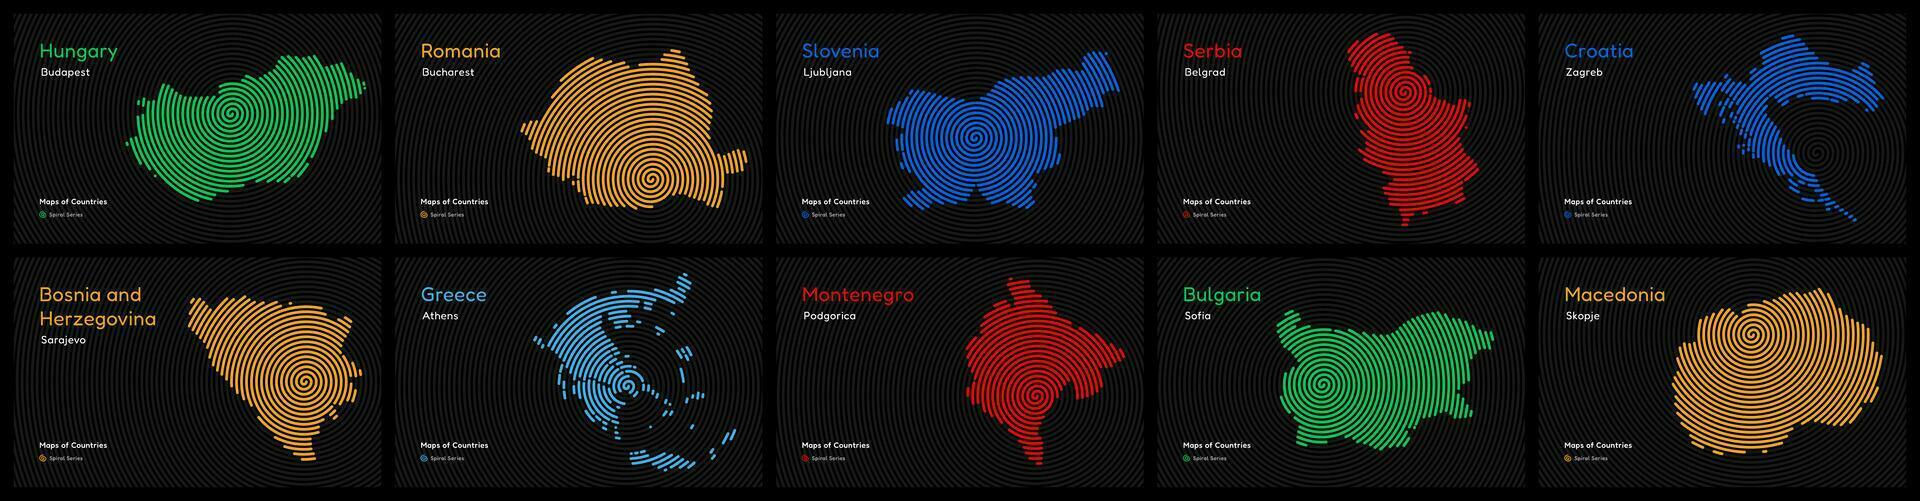 Balkan landen set. servië, Montenegro, Kroatië, albanië, Bosnië en herzegovina, bulgarije, Macedonië, Roemenië, Slovenië. spiraal vingerafdruk kaarten serie vector